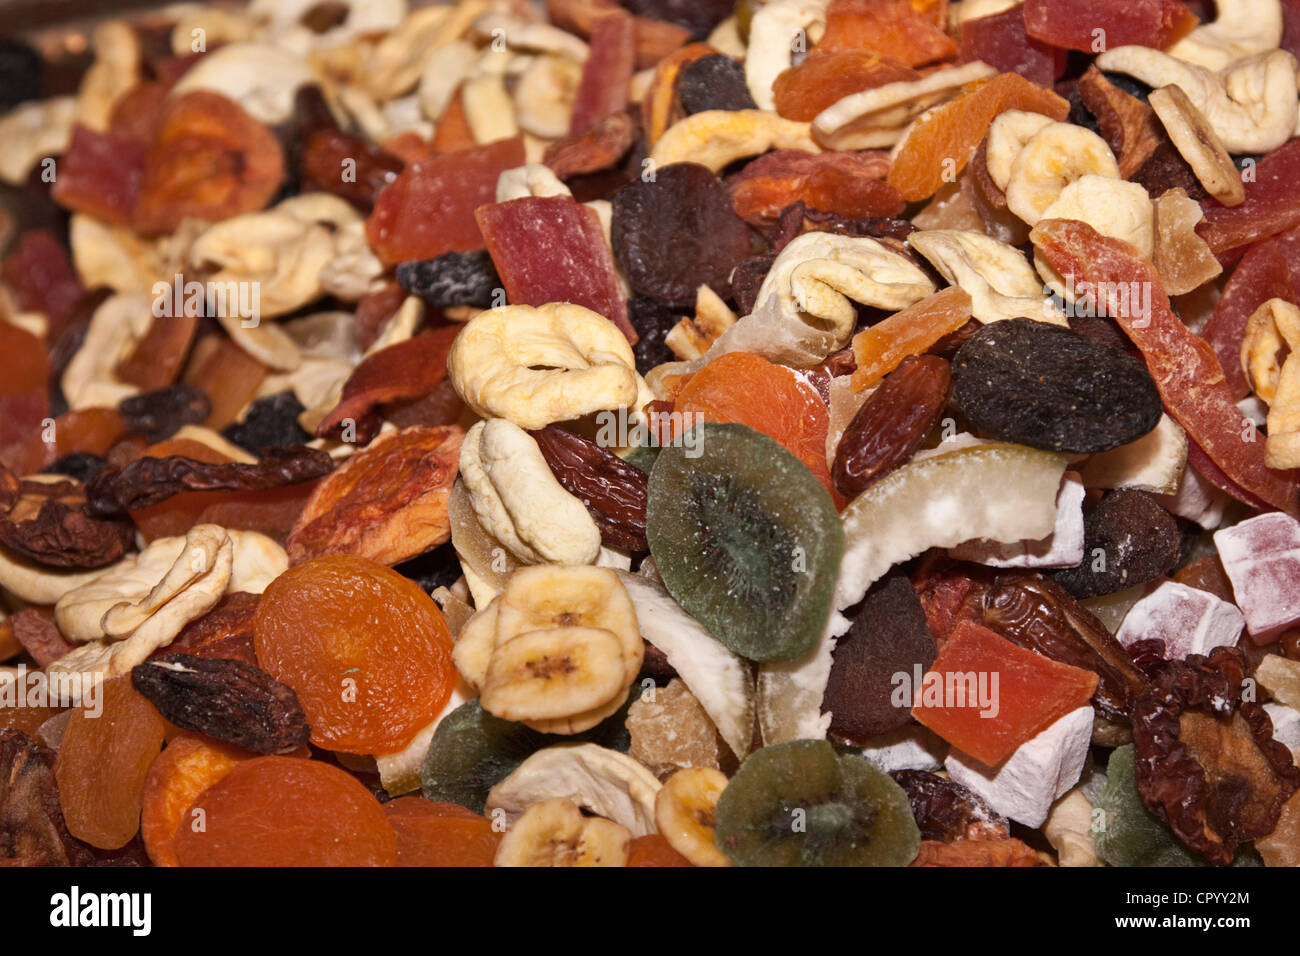 Los frutos secos, kiwi, albaricoque, plátano, papaya, fechas, jengibre, ciruelas, manzanas Foto de stock